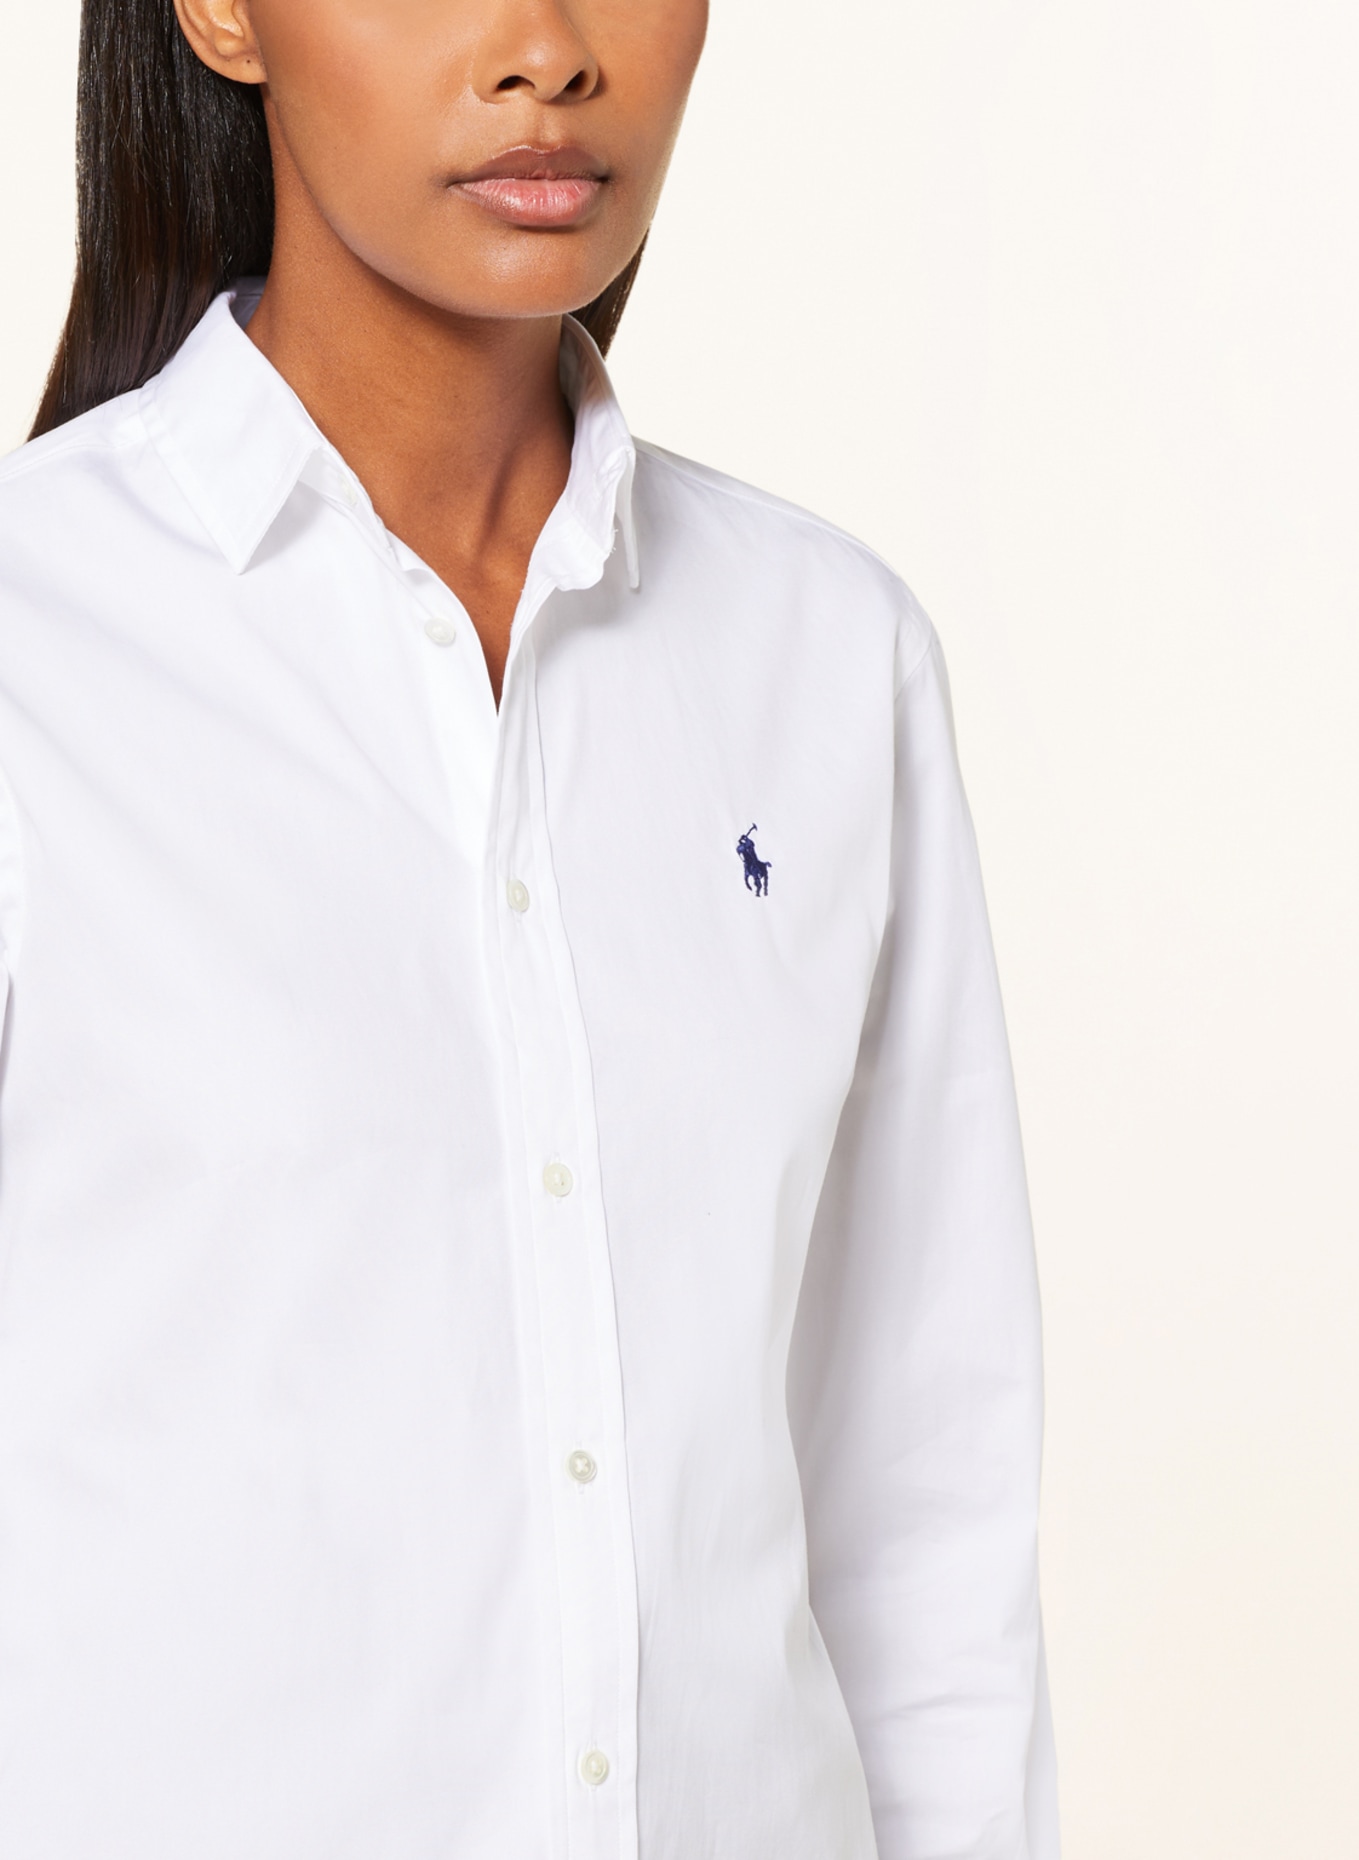 POLO RALPH LAUREN Shirt blouse, Color: WHITE (Image 4)